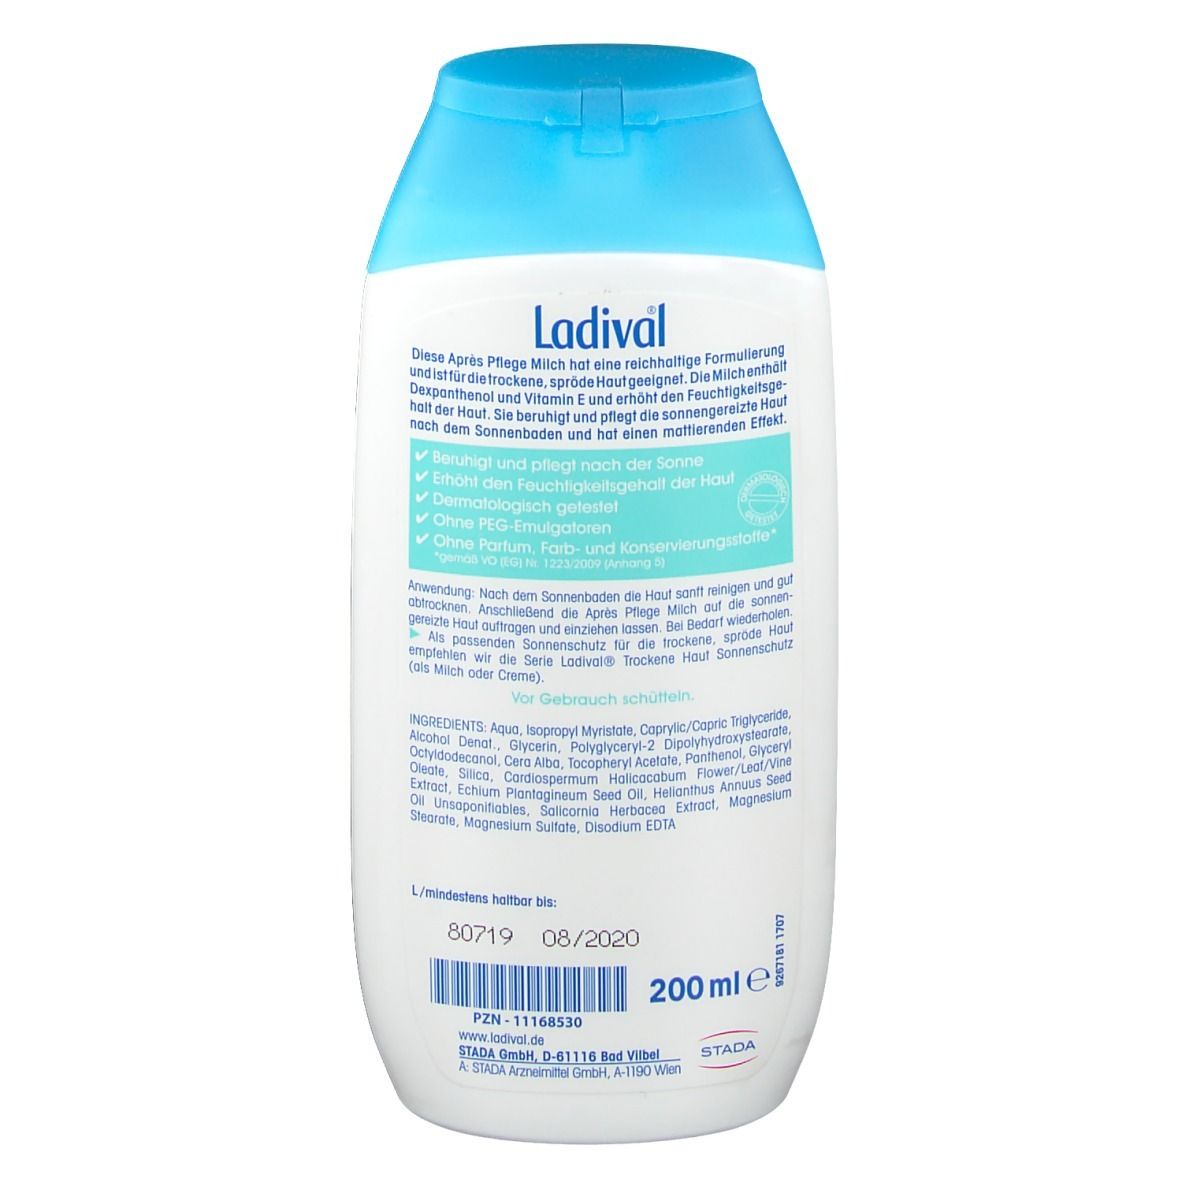 Ladival® Trockene Haut Après Pflege Milch